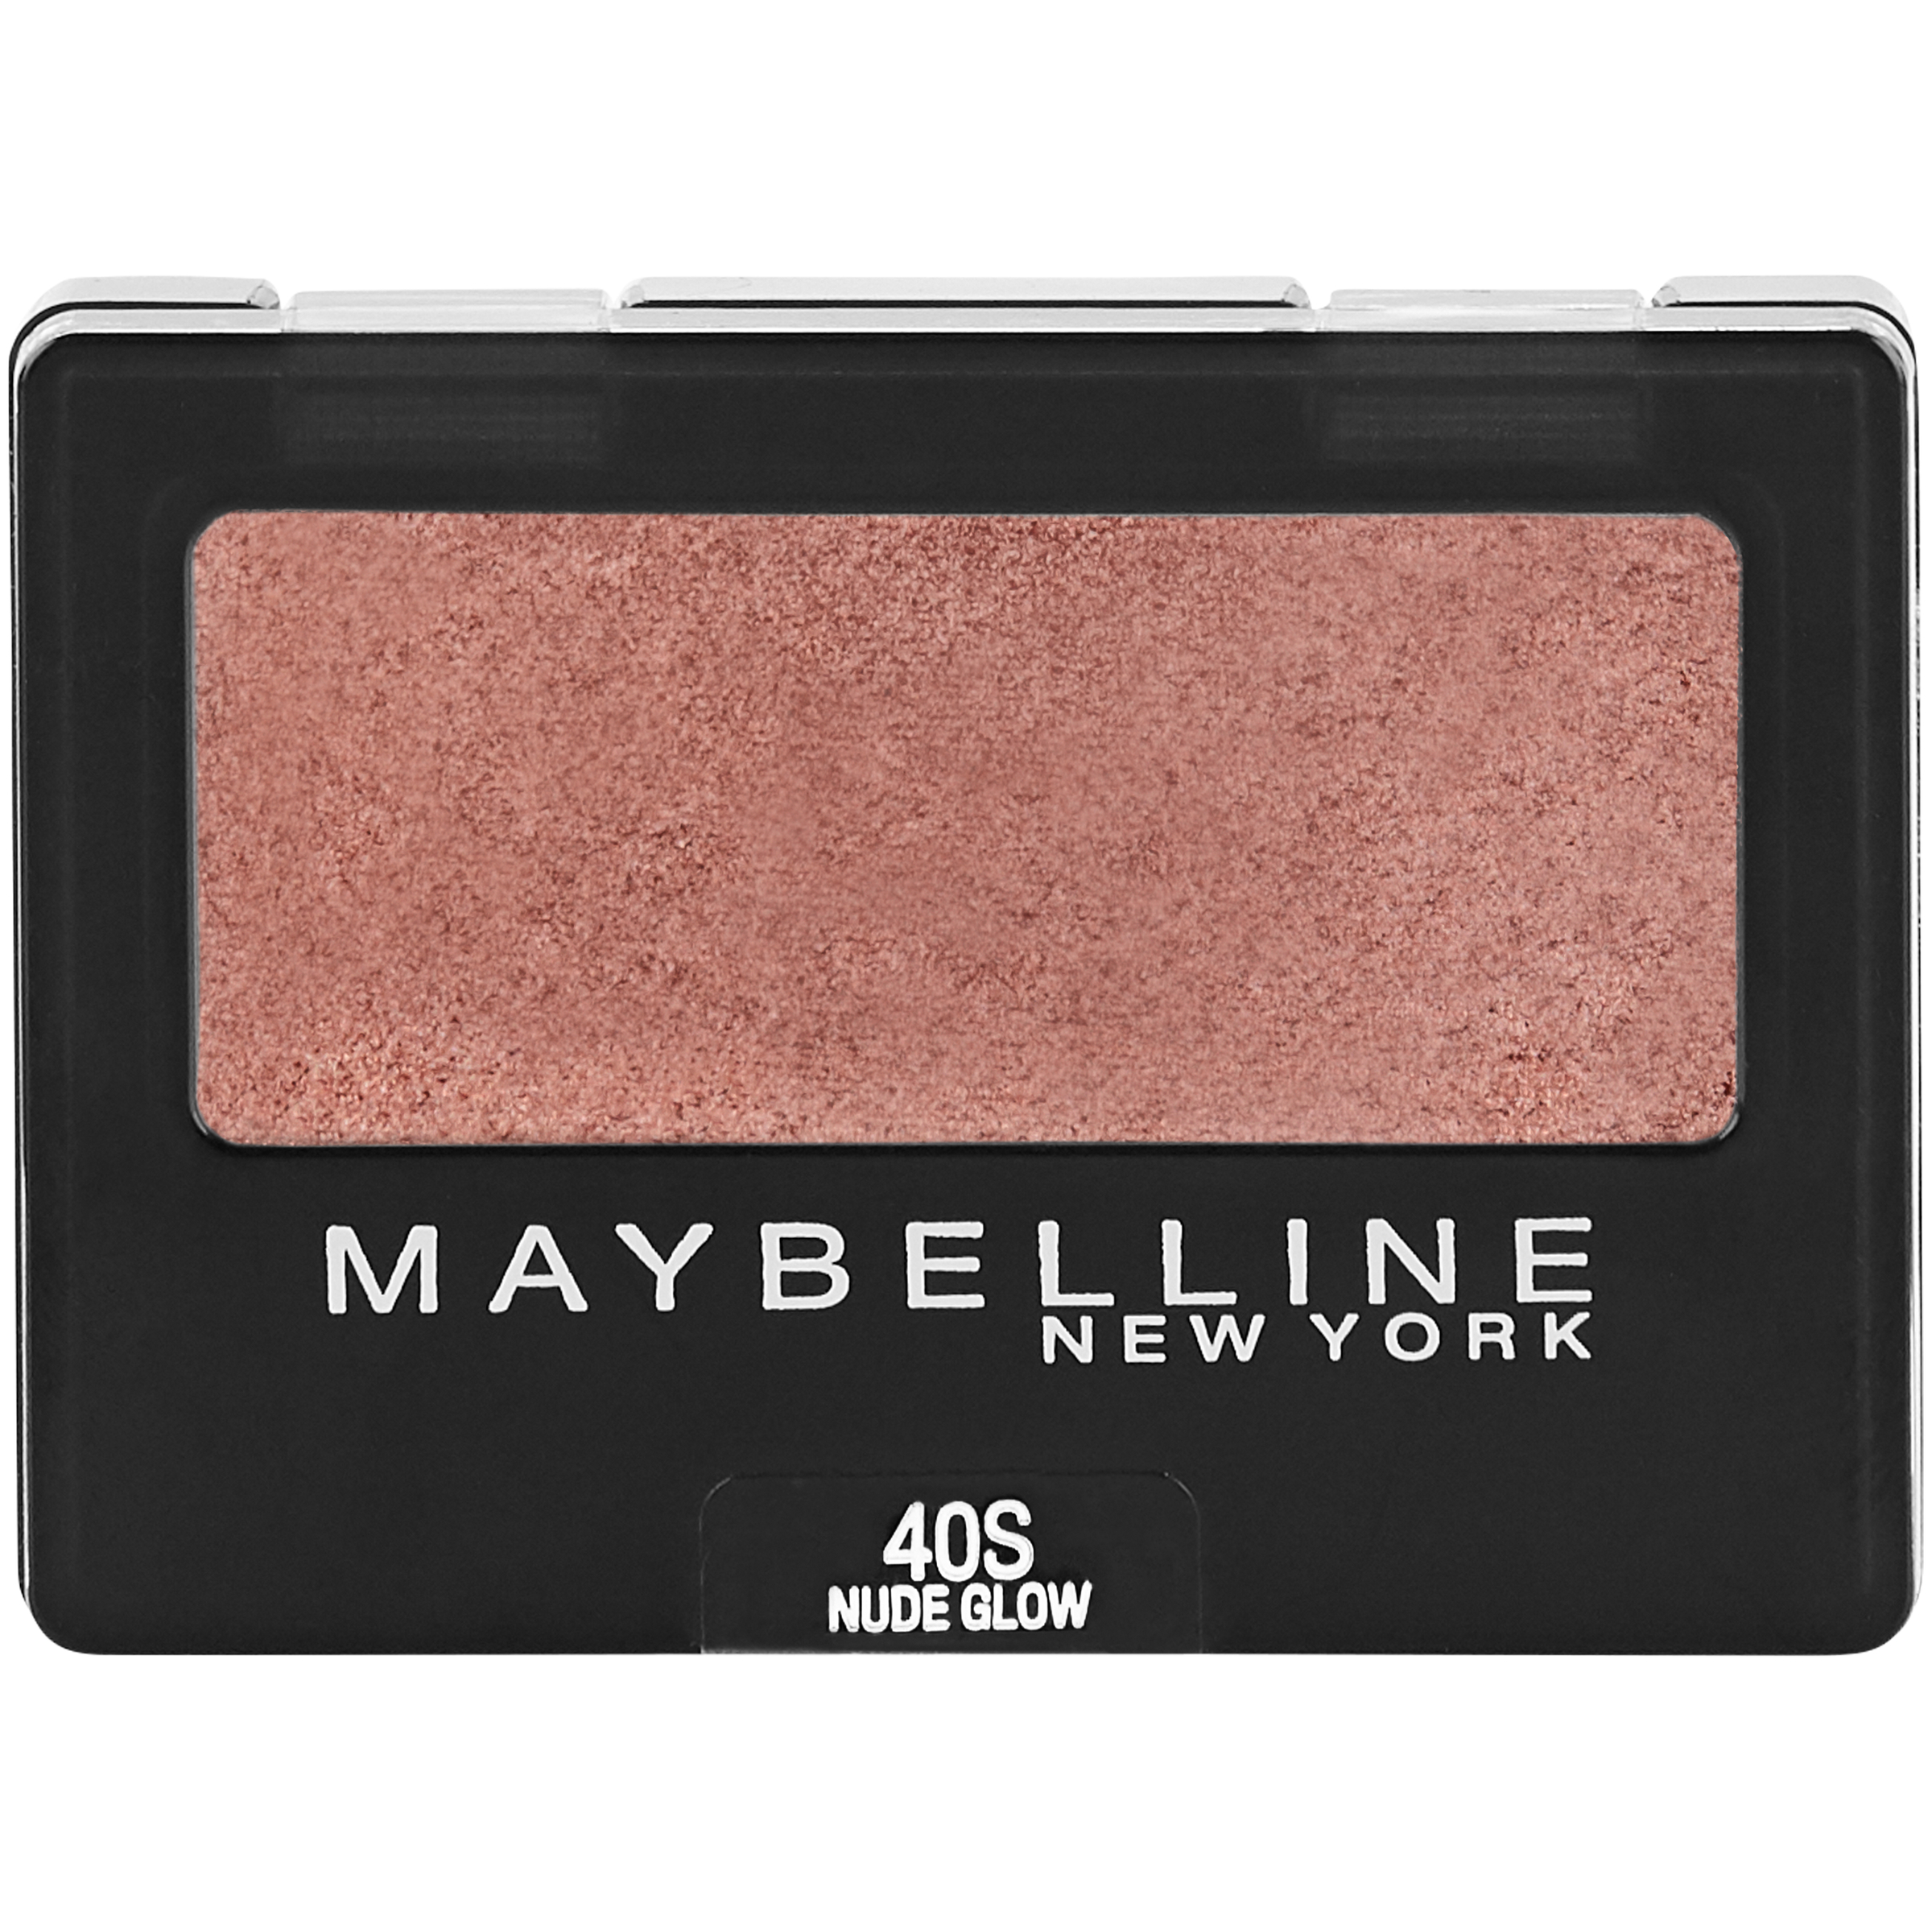 Maybelline New York  Expert Wear Eyeshadow 40S Nude Glow, 0.08 oz. Compact